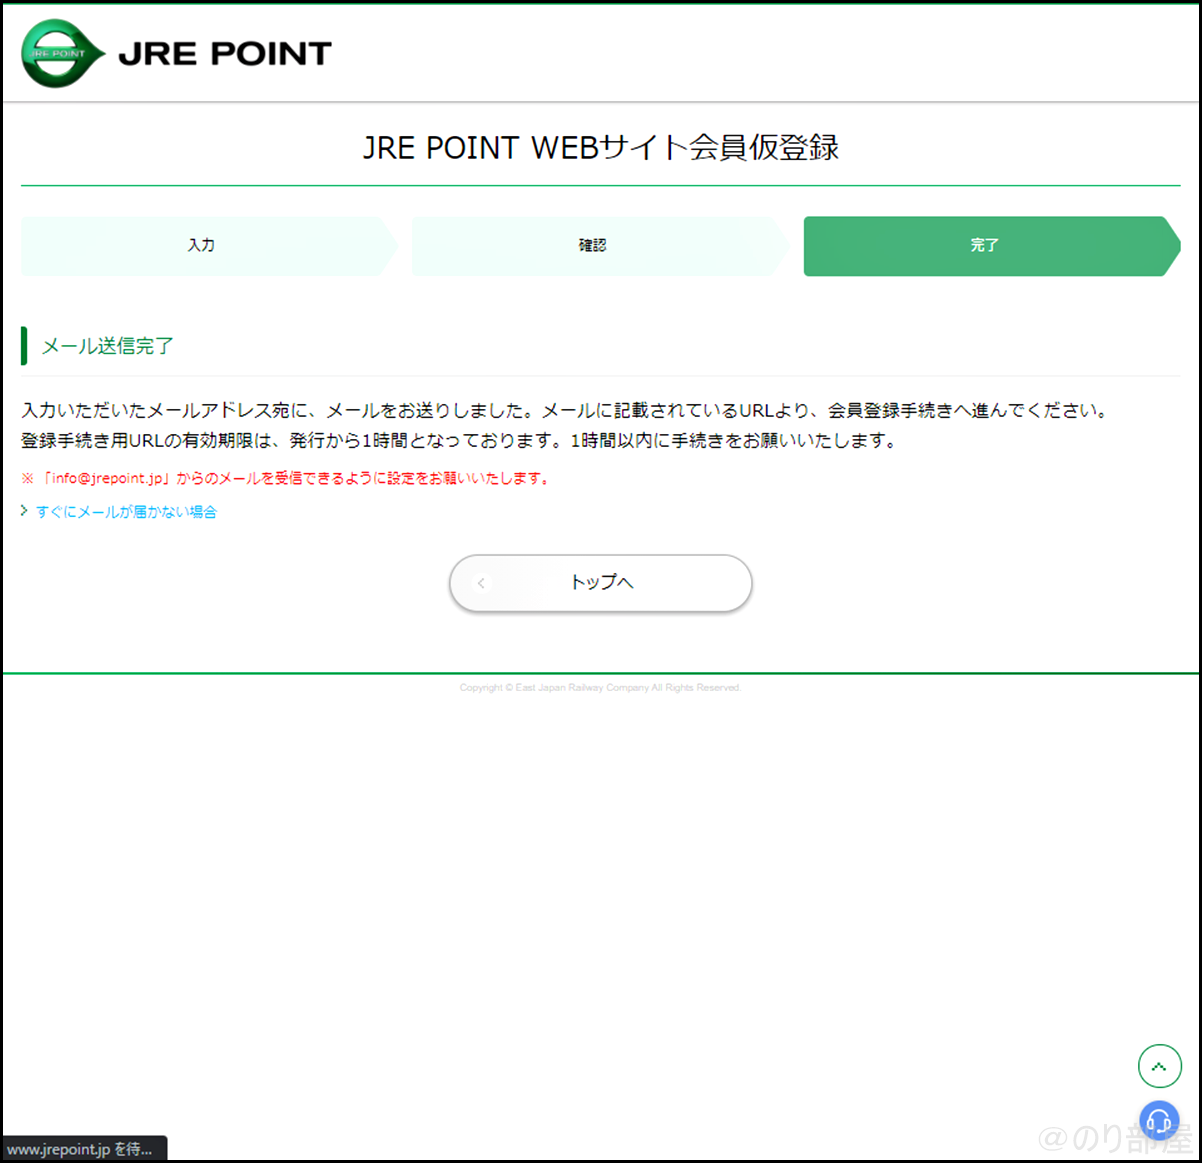 「JRE POINT WEBサイト会員仮登録」でJRE POINTに登録をします【徹底解説】JREポイントの登録方法｡スマホアプリでカードいらずでポイントを貯めることができます！ポイントはSuicaにチャージ！。 